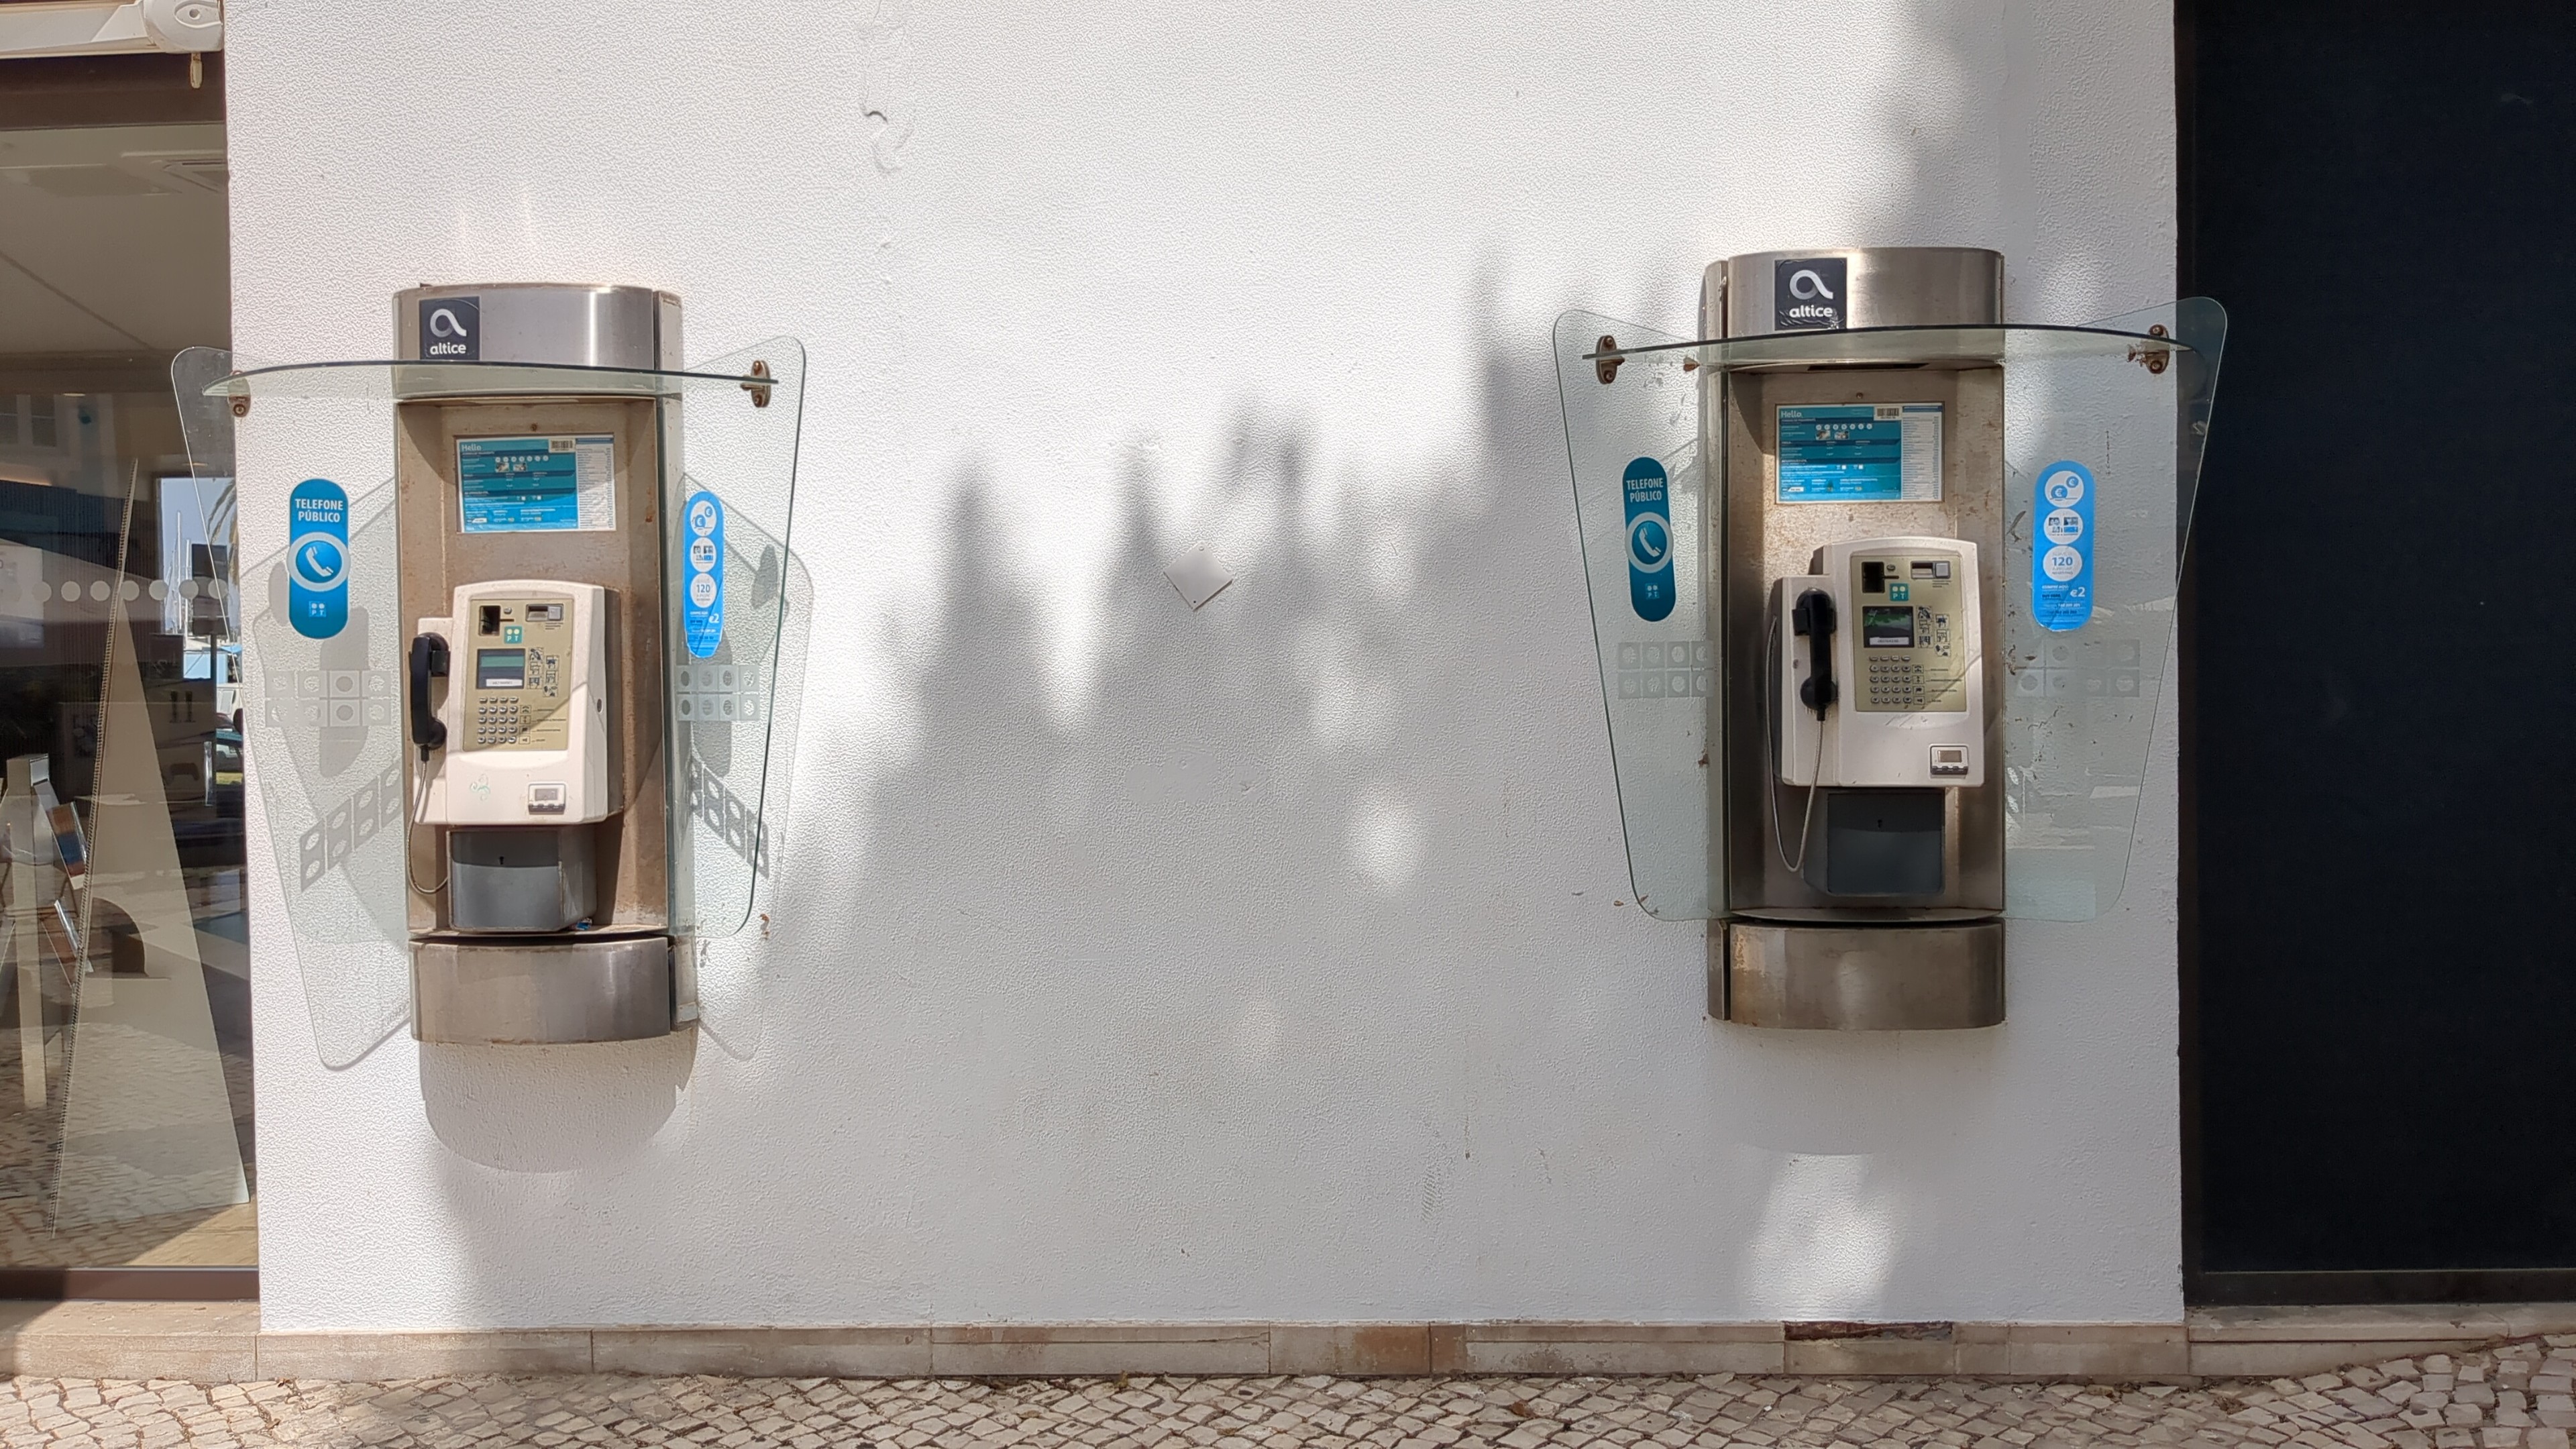 Uma parede branca com dois telefones públicos